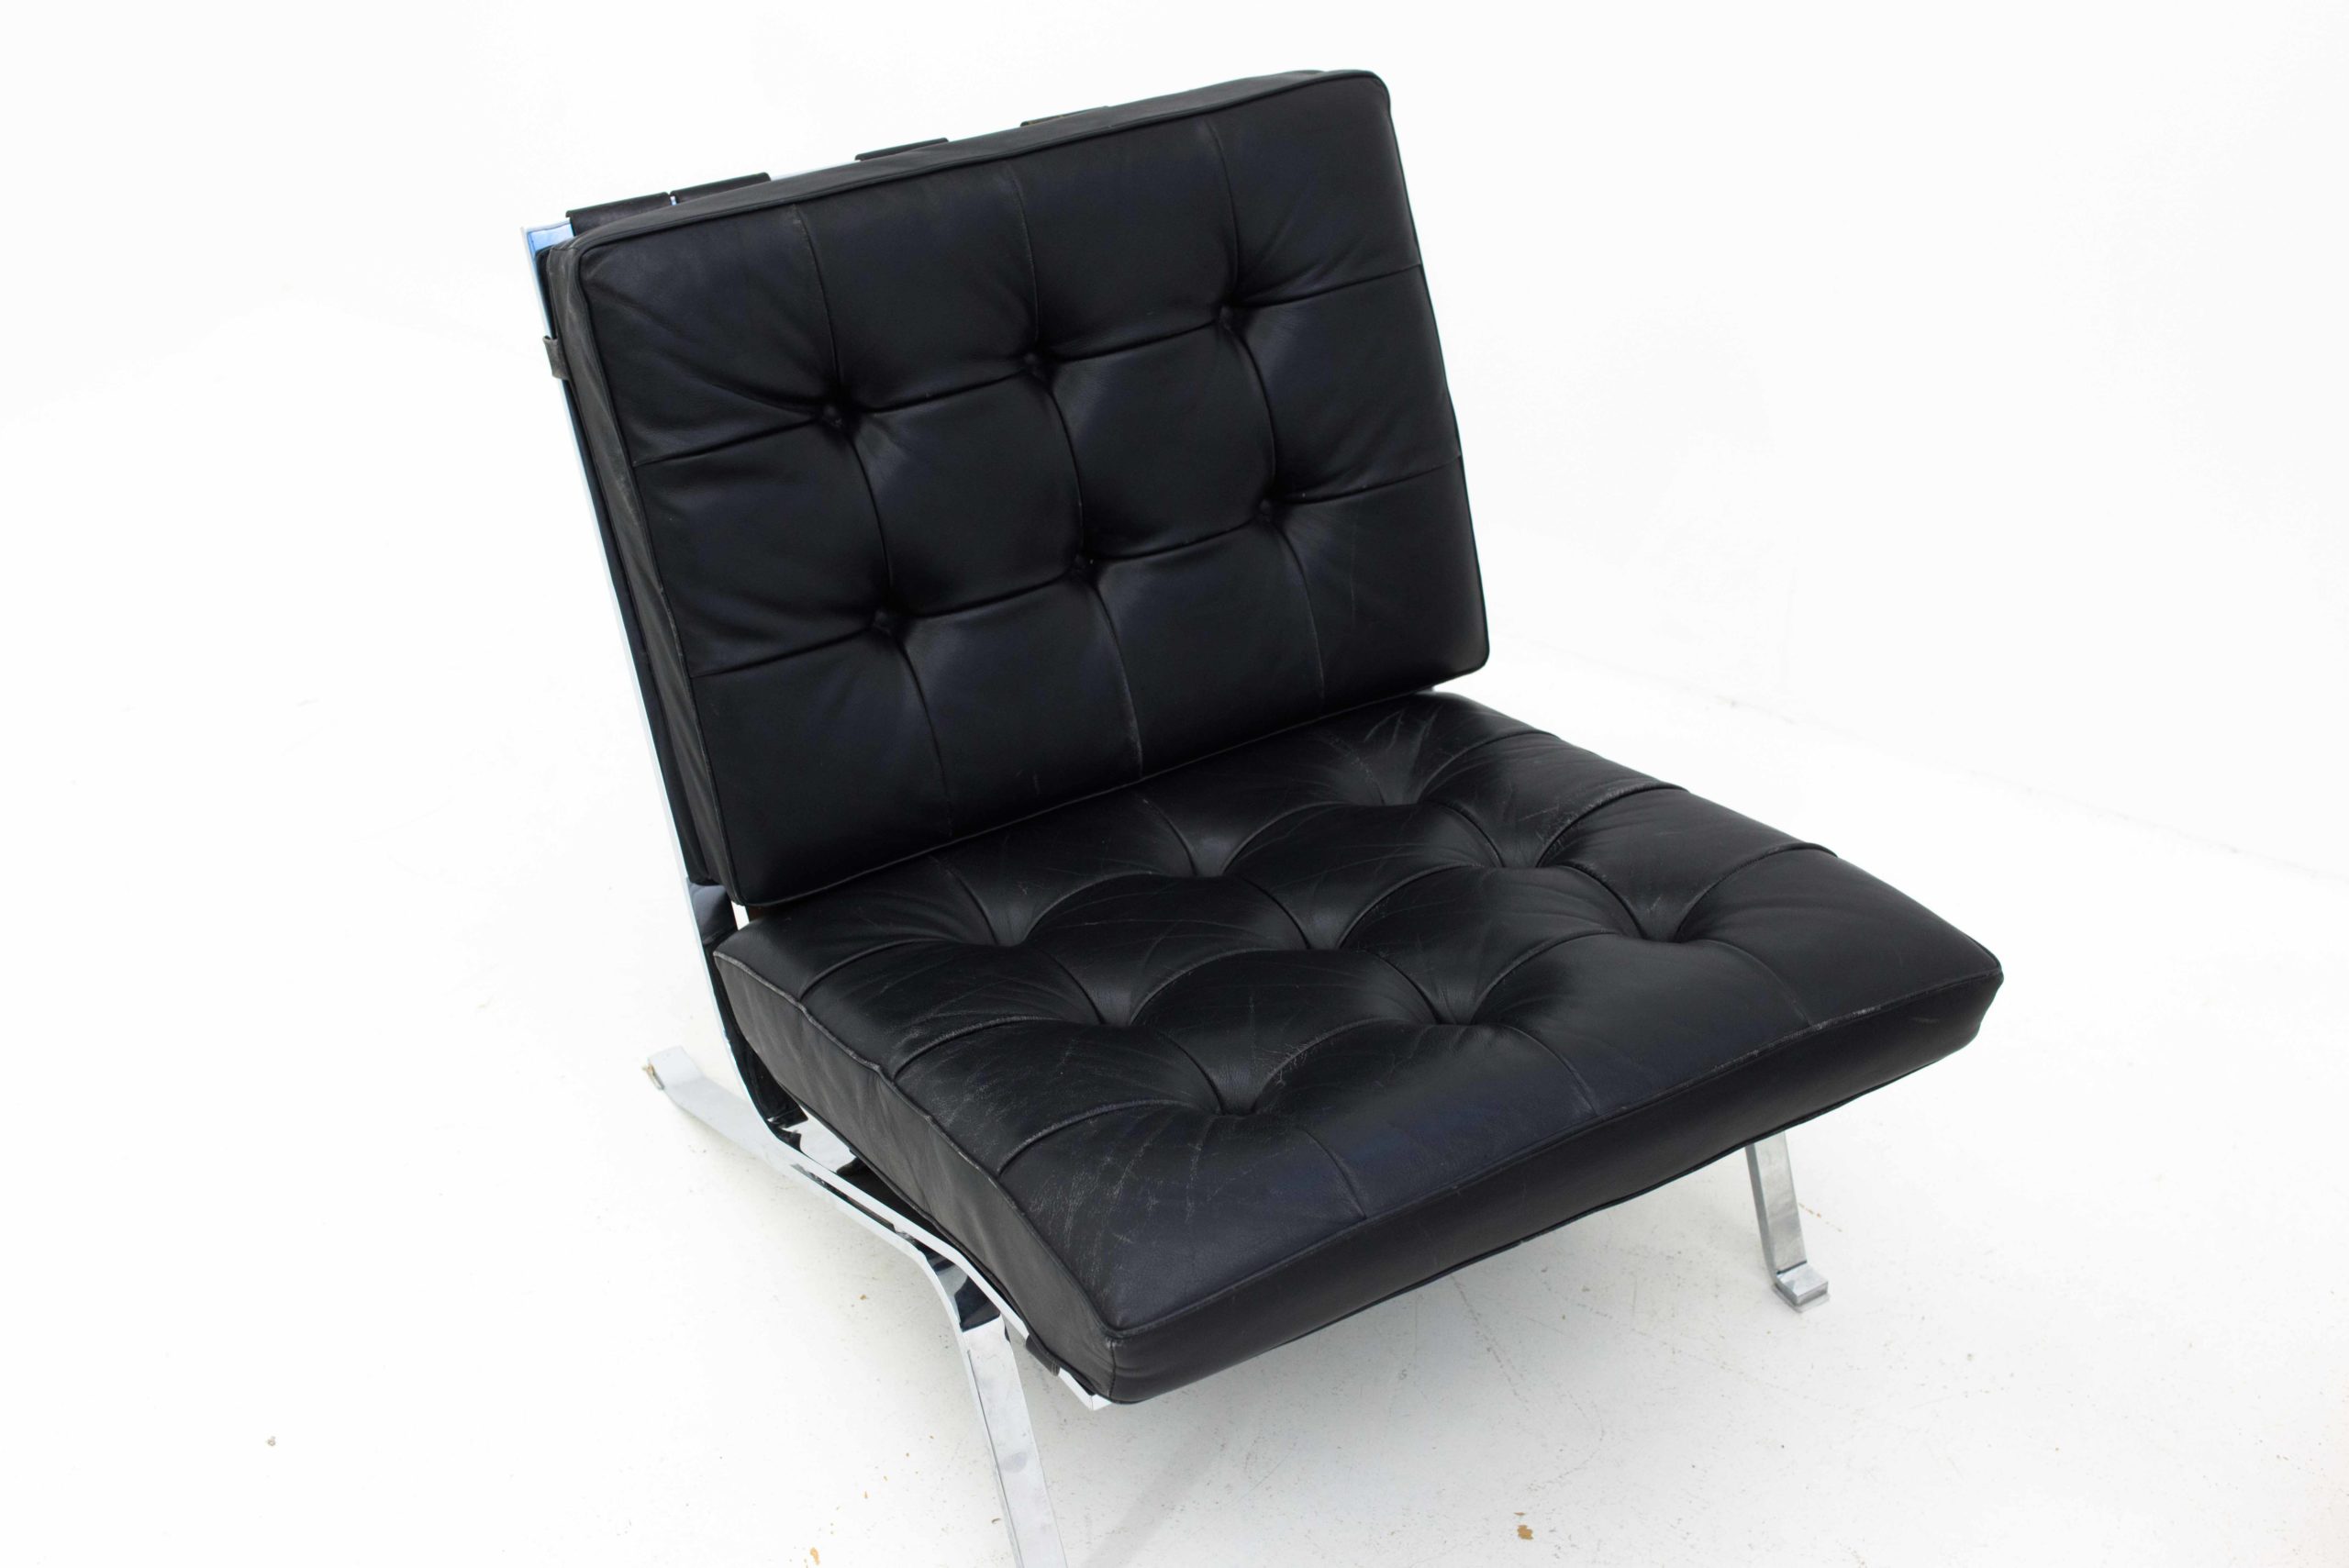 De Sede RH-301 Sessel von Robert Haussmann, im Zweierset-12